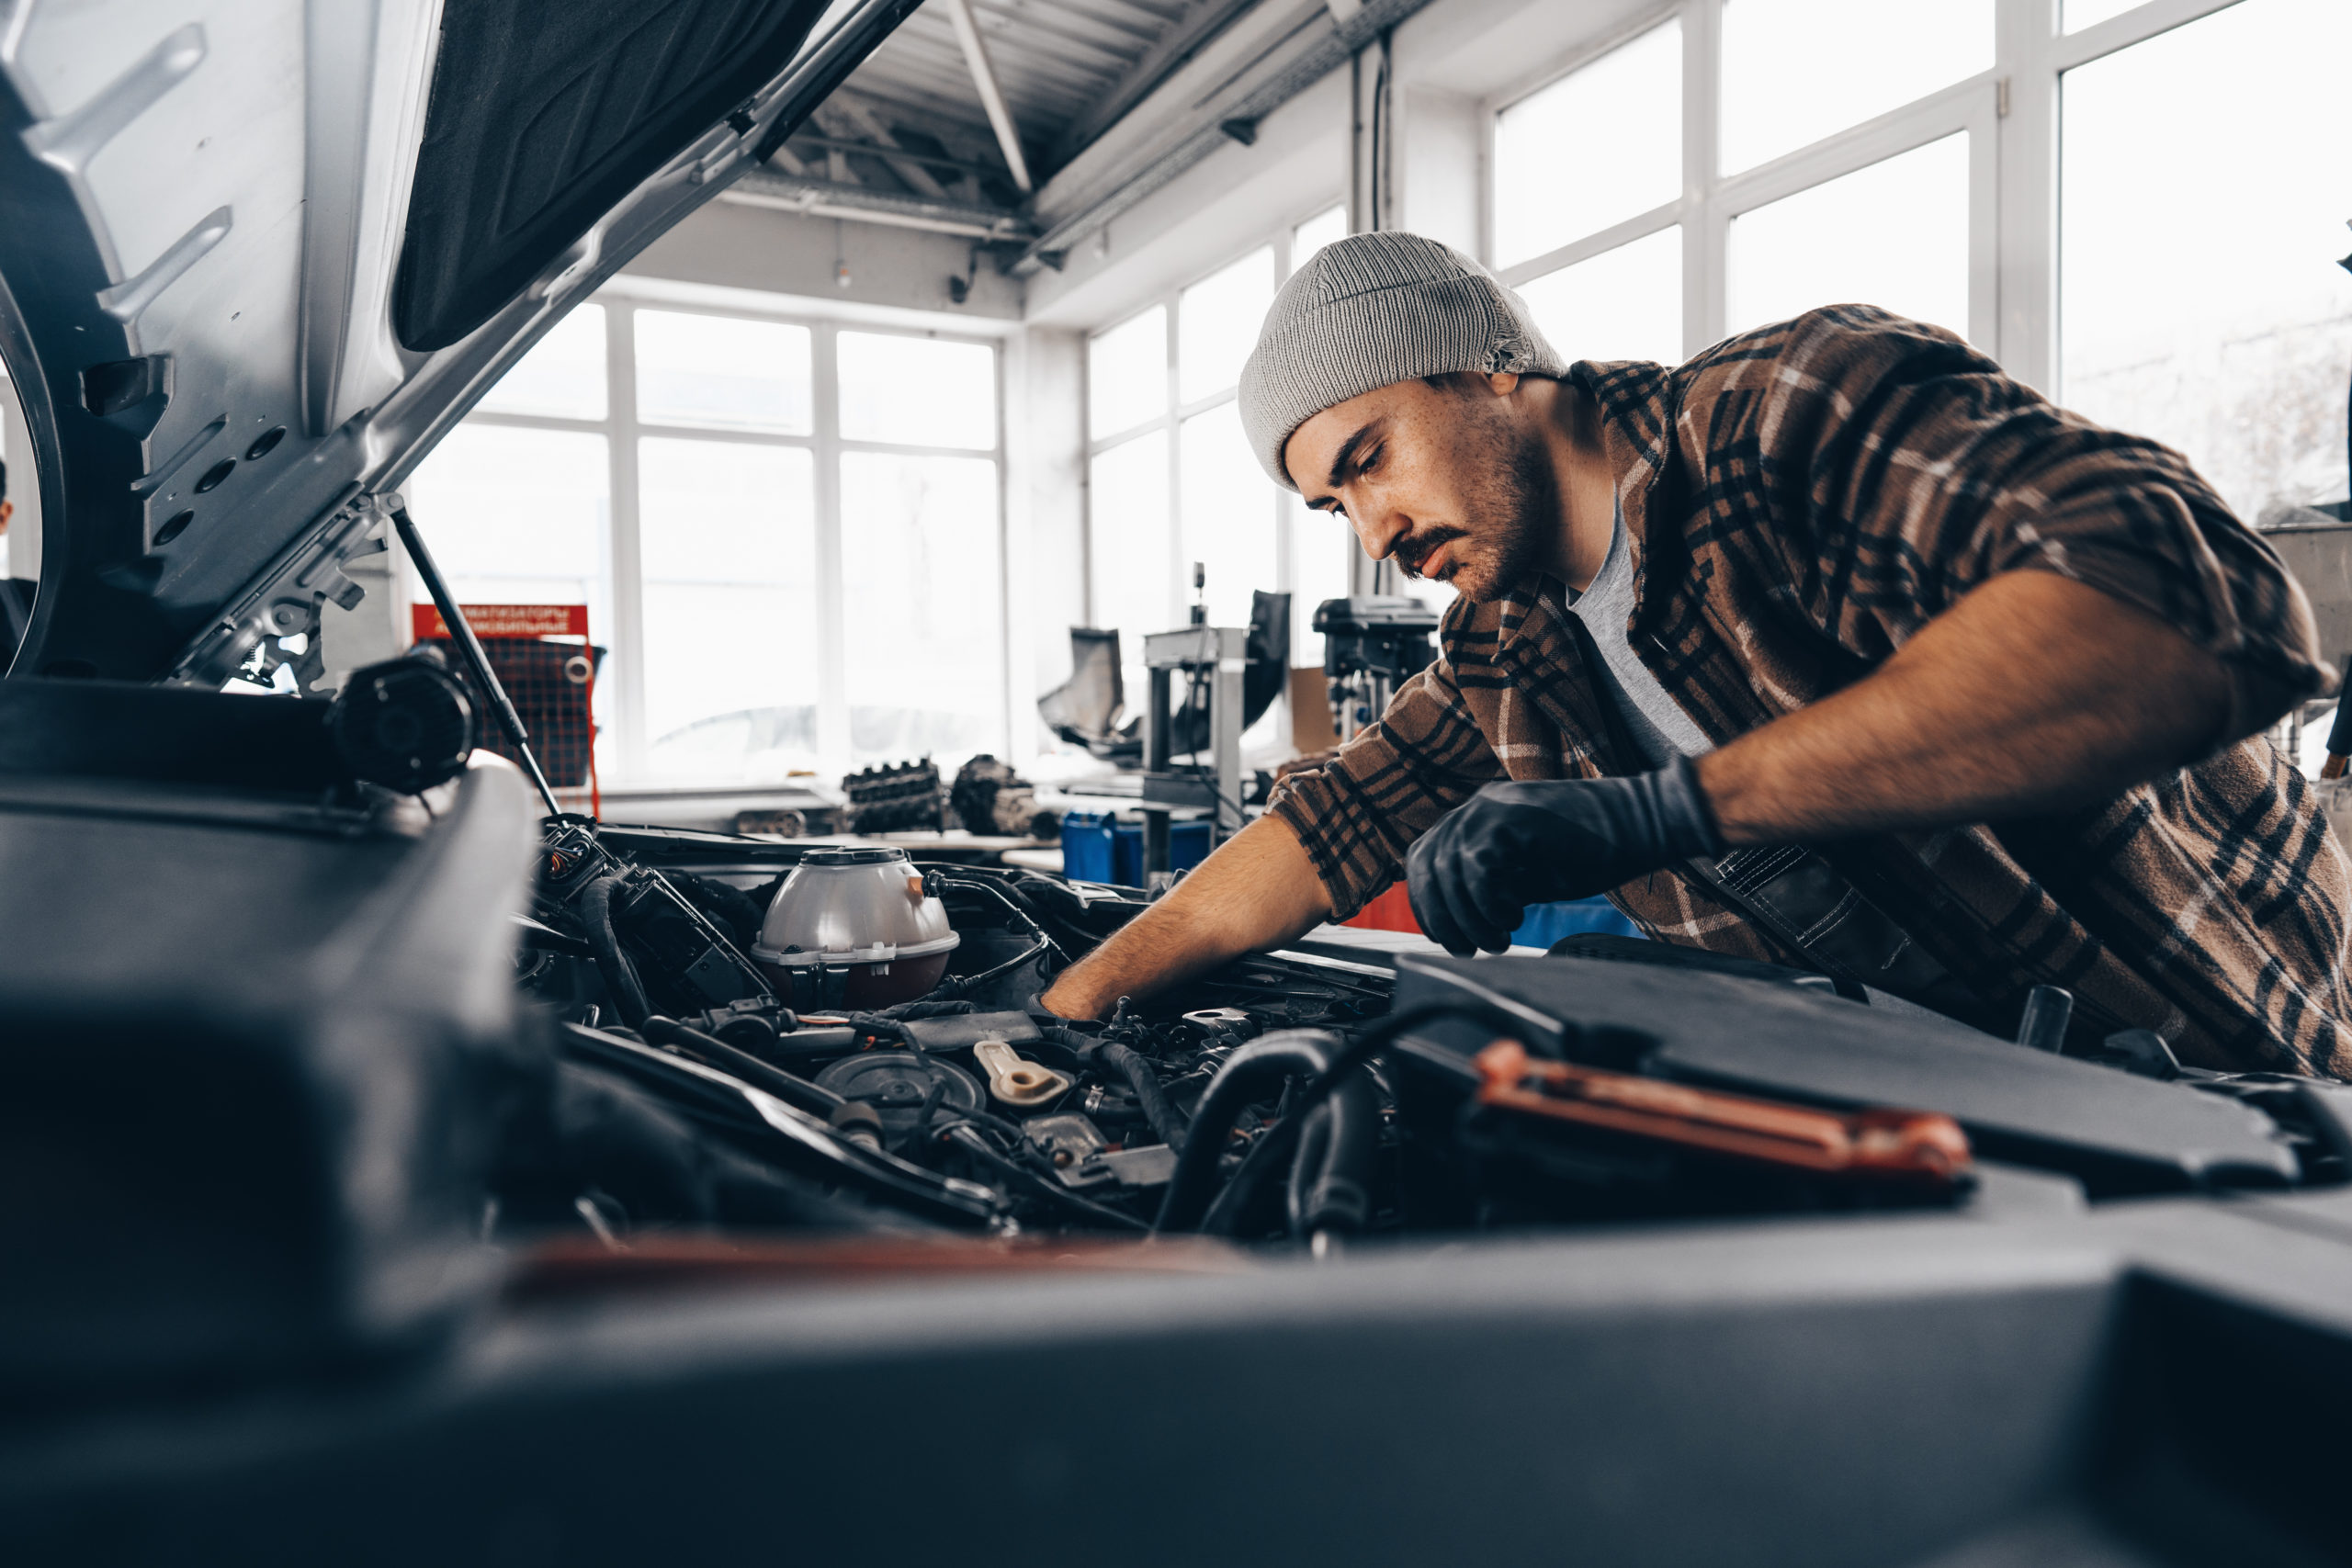 https://autolab.com.co/wp-content/uploads/mechanic-examining-car-in-auto-car-repair-service-2023-11-27-05-32-54-utc-scaled.jpg